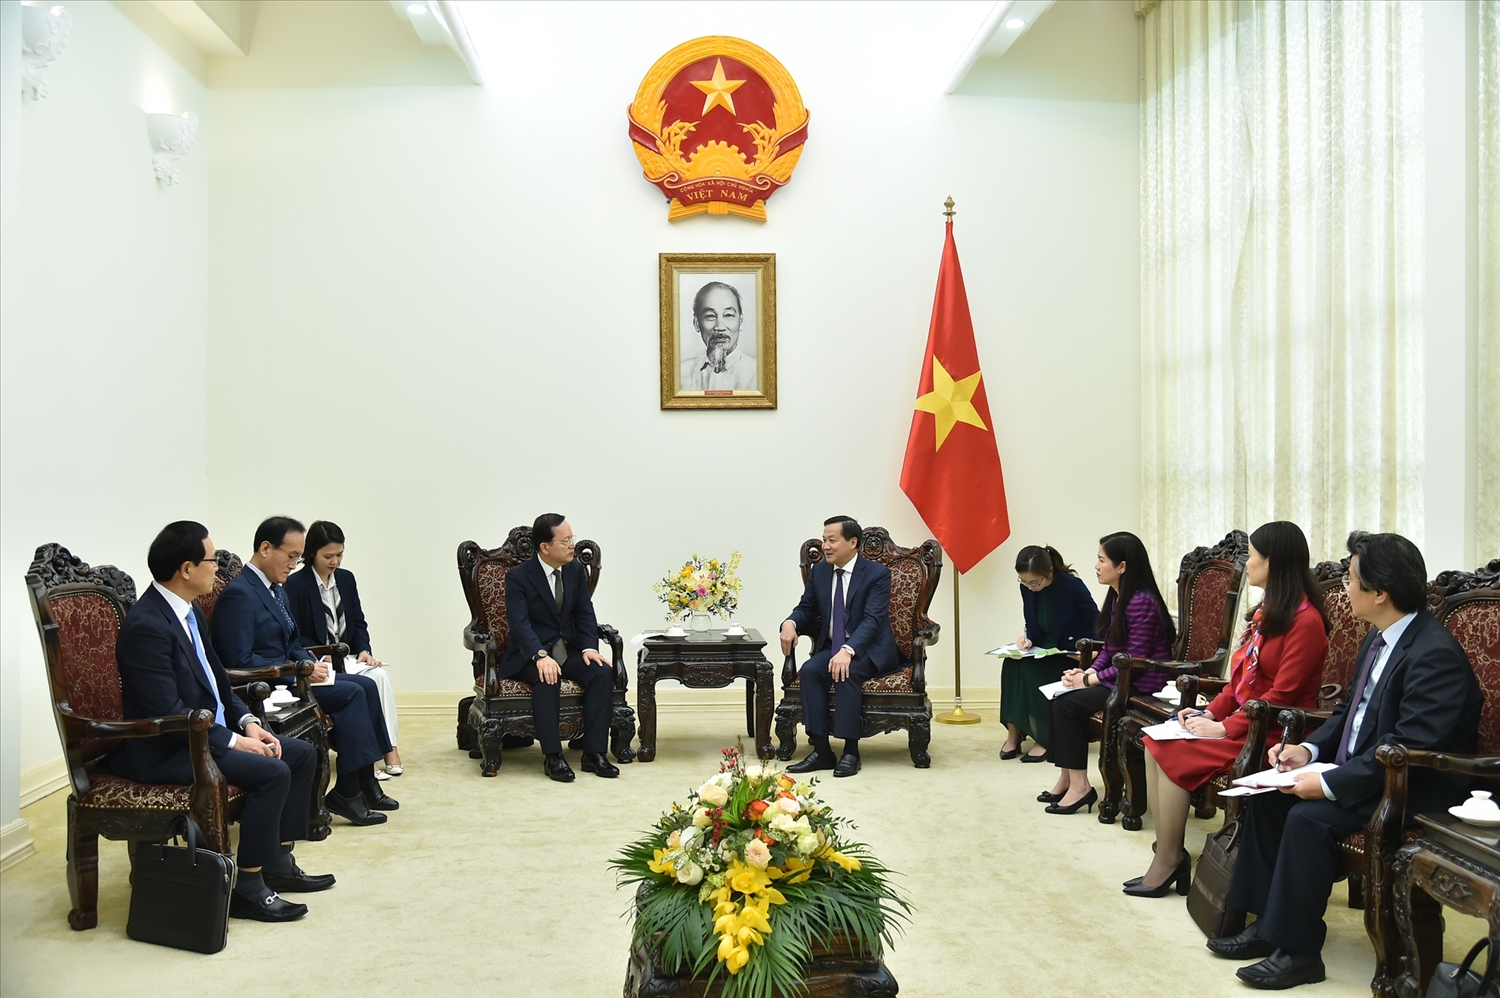 Phó Thủ tướng Lê Minh Khái: Chính phủ Việt Nam cũng cam kết luôn tạo mọi điều kiện thuận lợi nhất cho các nhà đầu tư nước ngoài hợp tác sản xuất kinh doanh, lâu dài. Ảnh VGP/Quang Thương